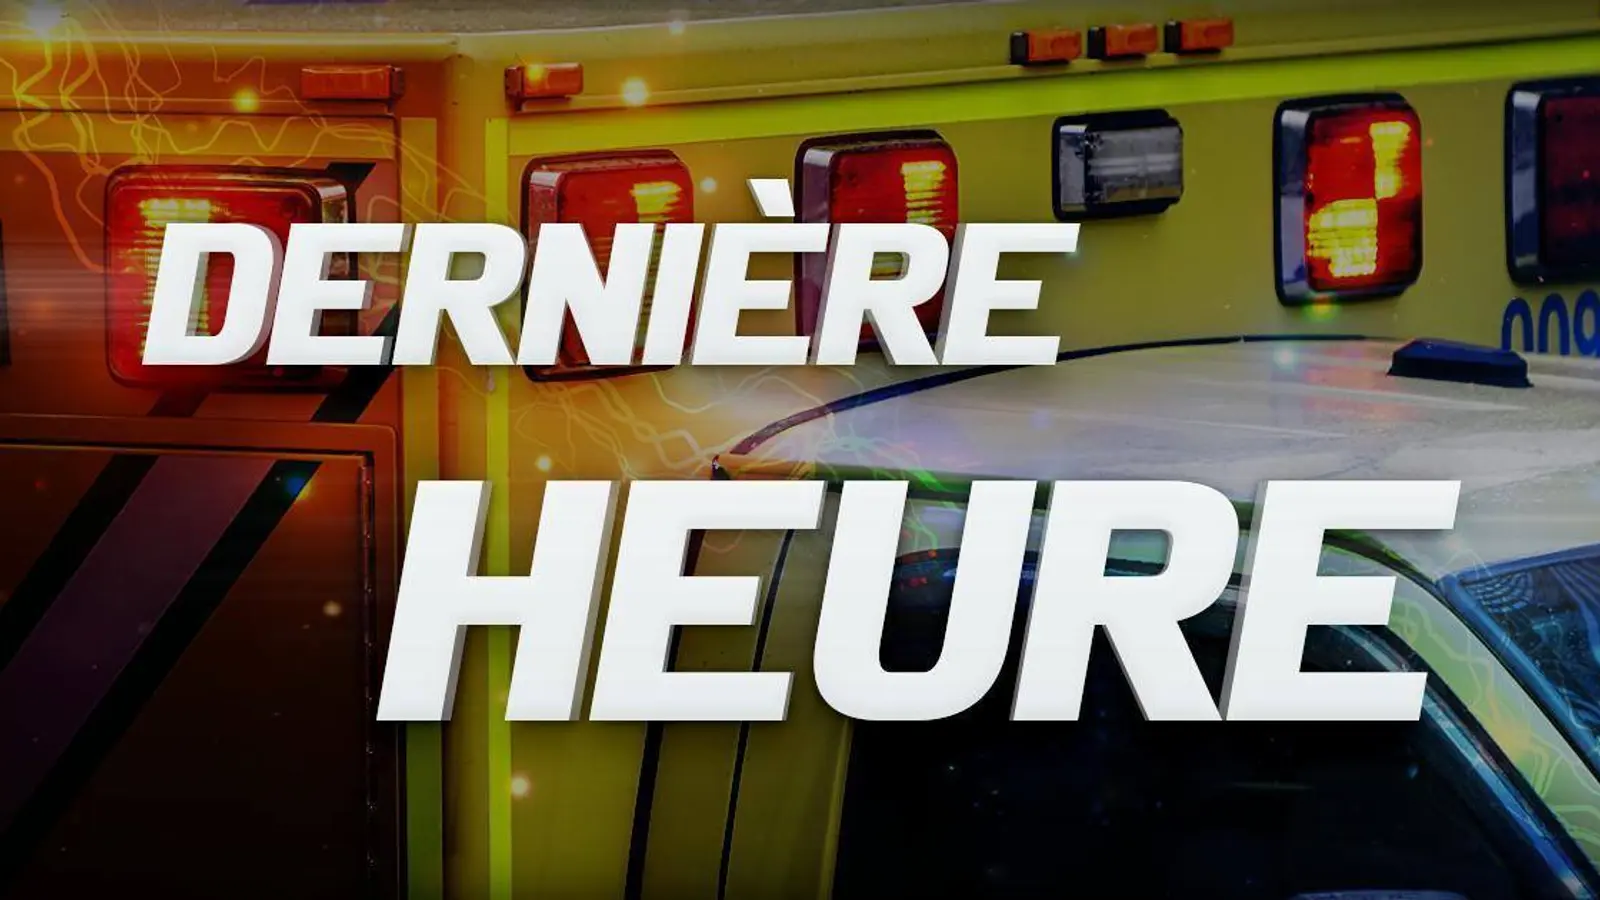 La Sûreté du Québec annonce que quatre enfants ont été retrouvés inanimés